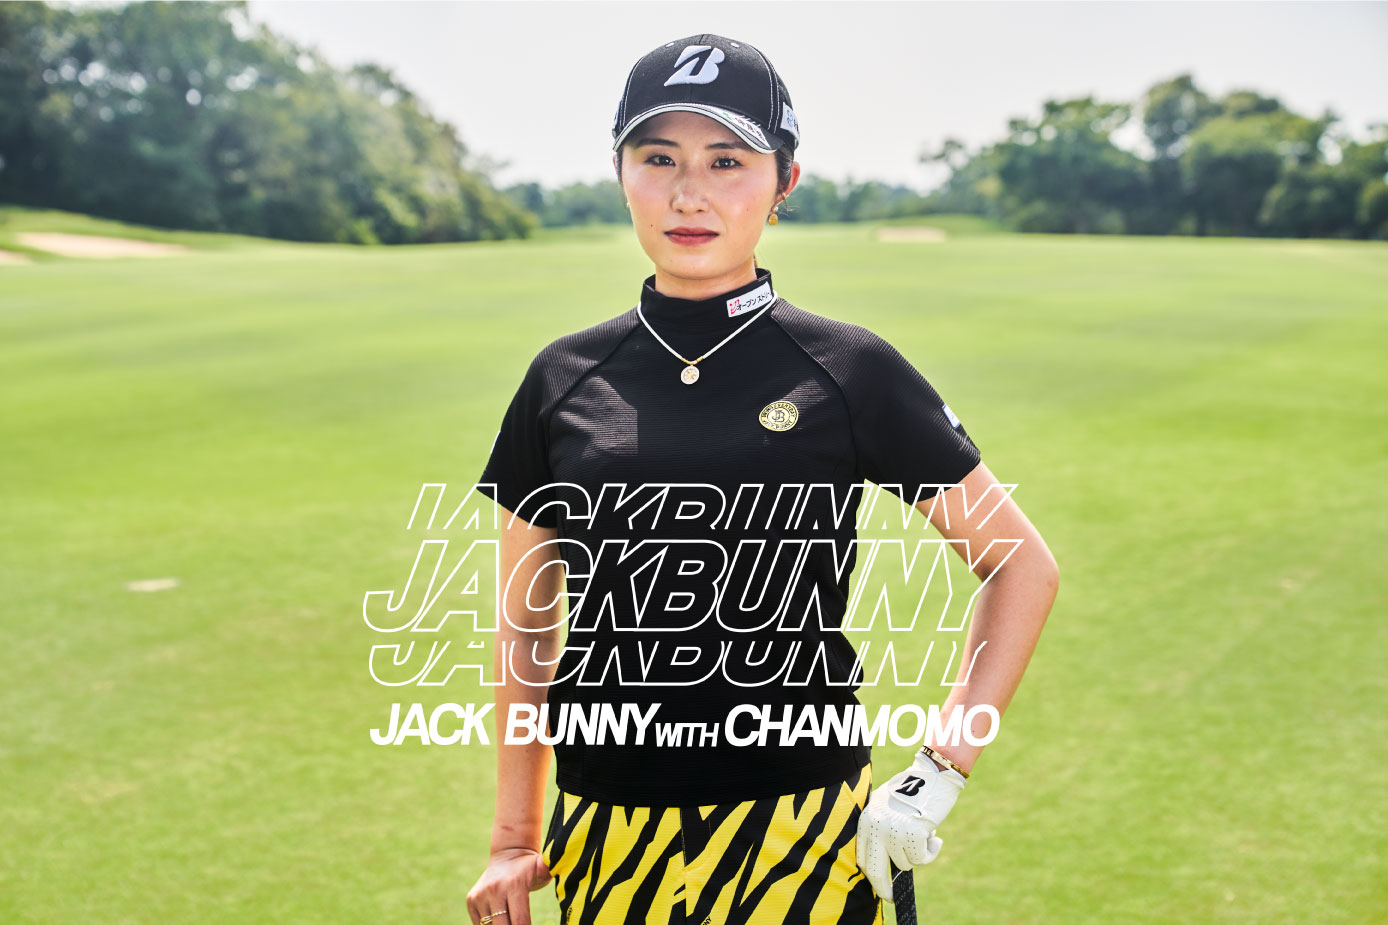 ゴルフアパレル「Jack Bunny!!」と契約プロゴルファー大里桃子プロの